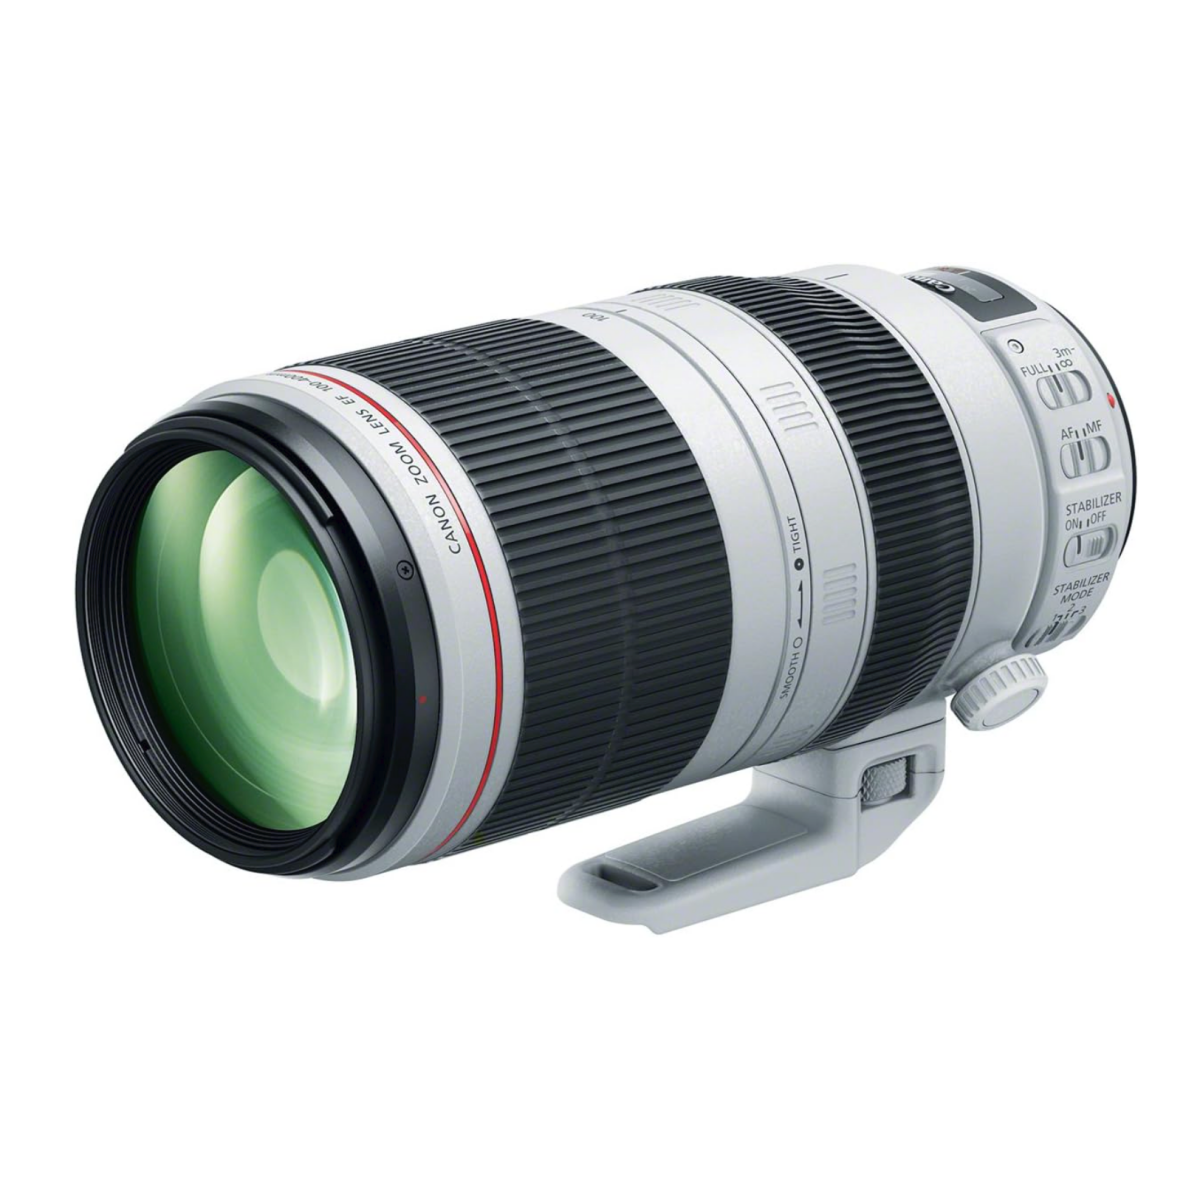 A Canon EF 100-400mm F4.5-5.6L IS II USM lens for DSLR cameras